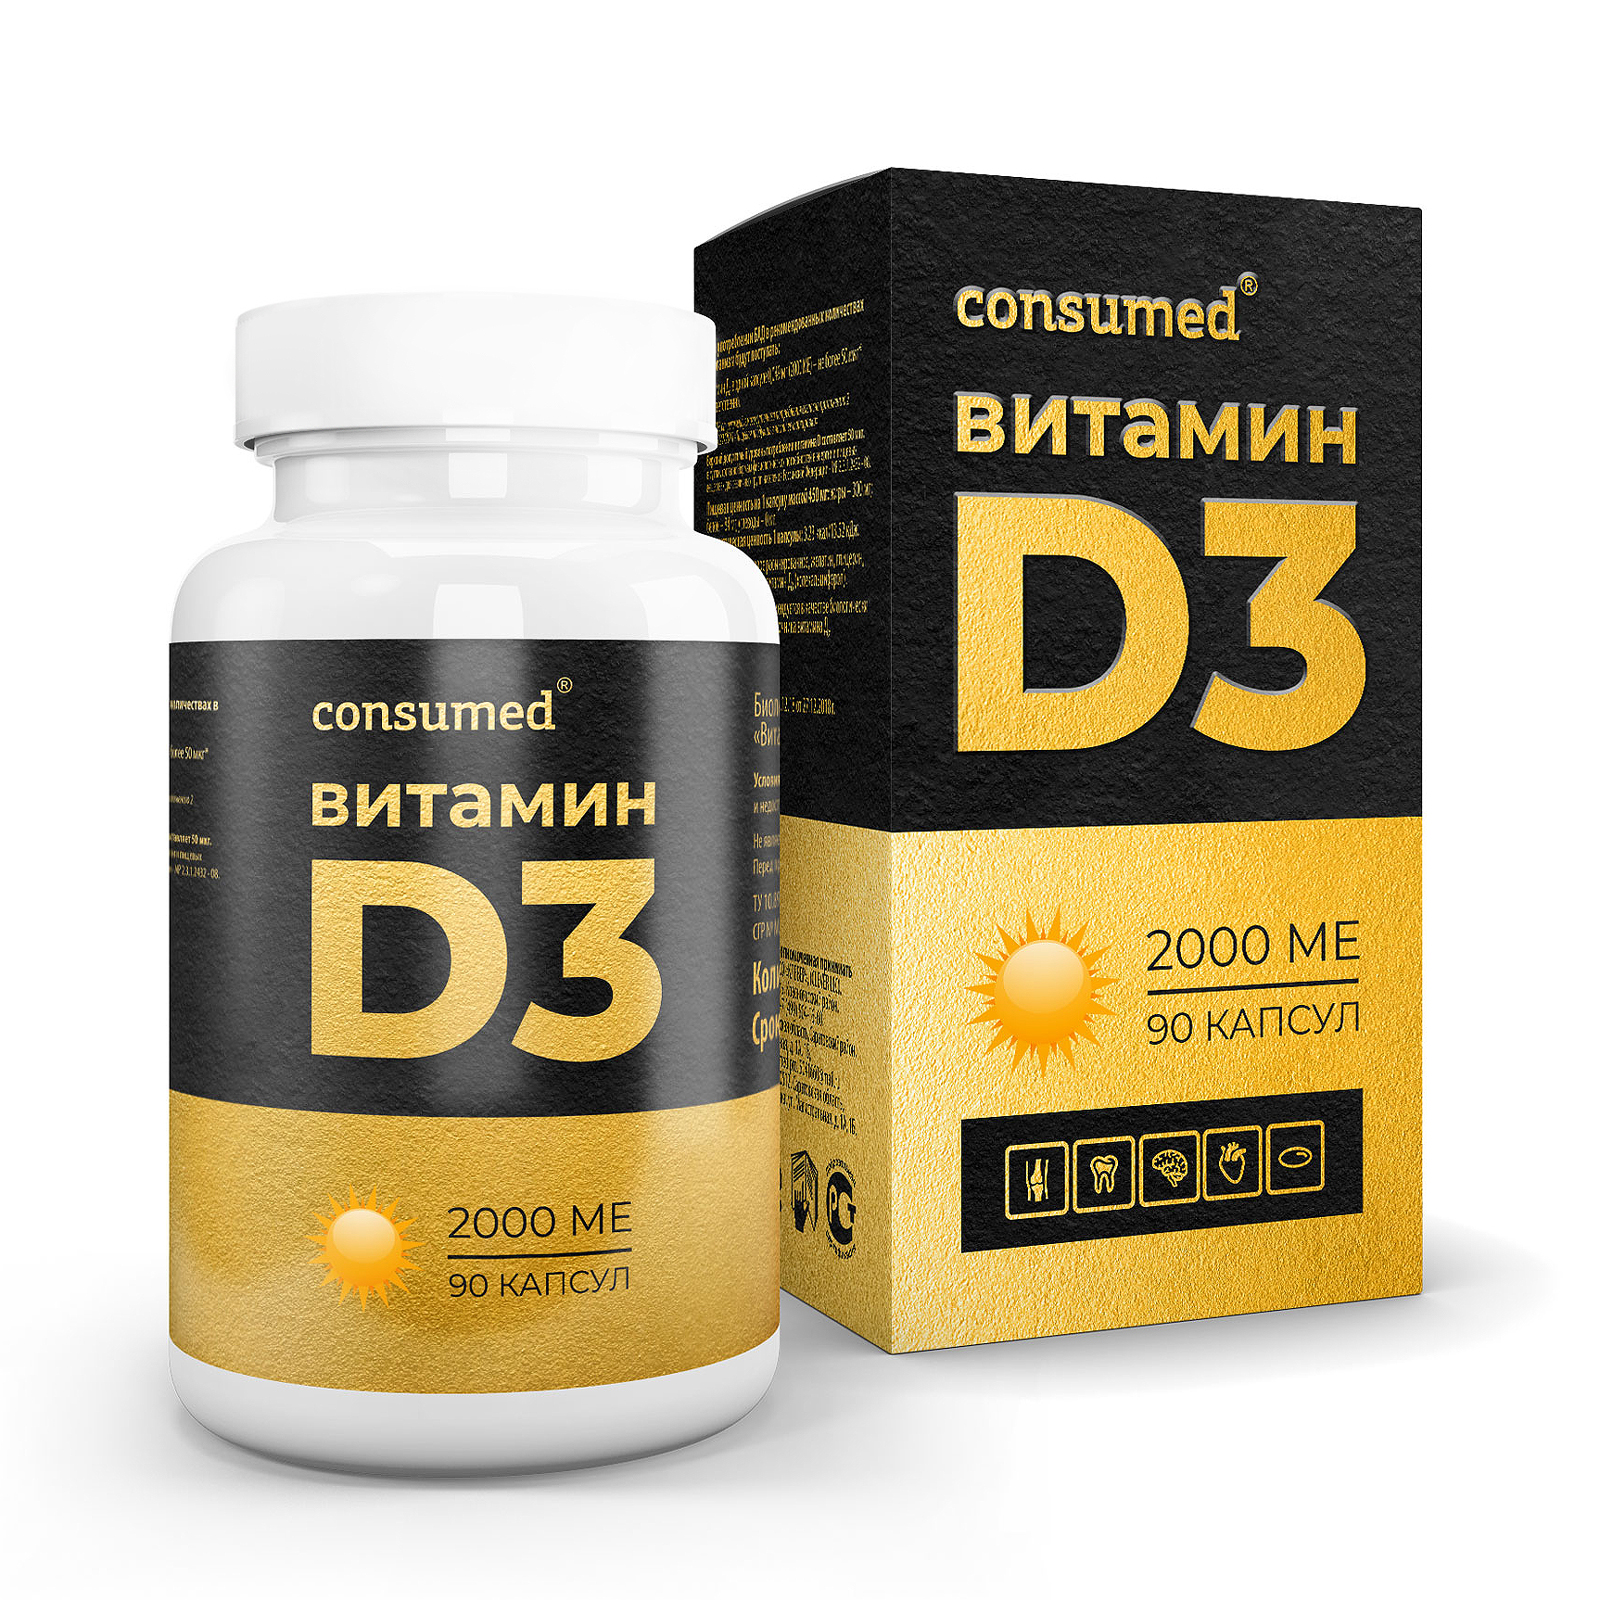 Витамин D3 2000 МЕ №90 - инструкция, состав, цена на официальном сайте .